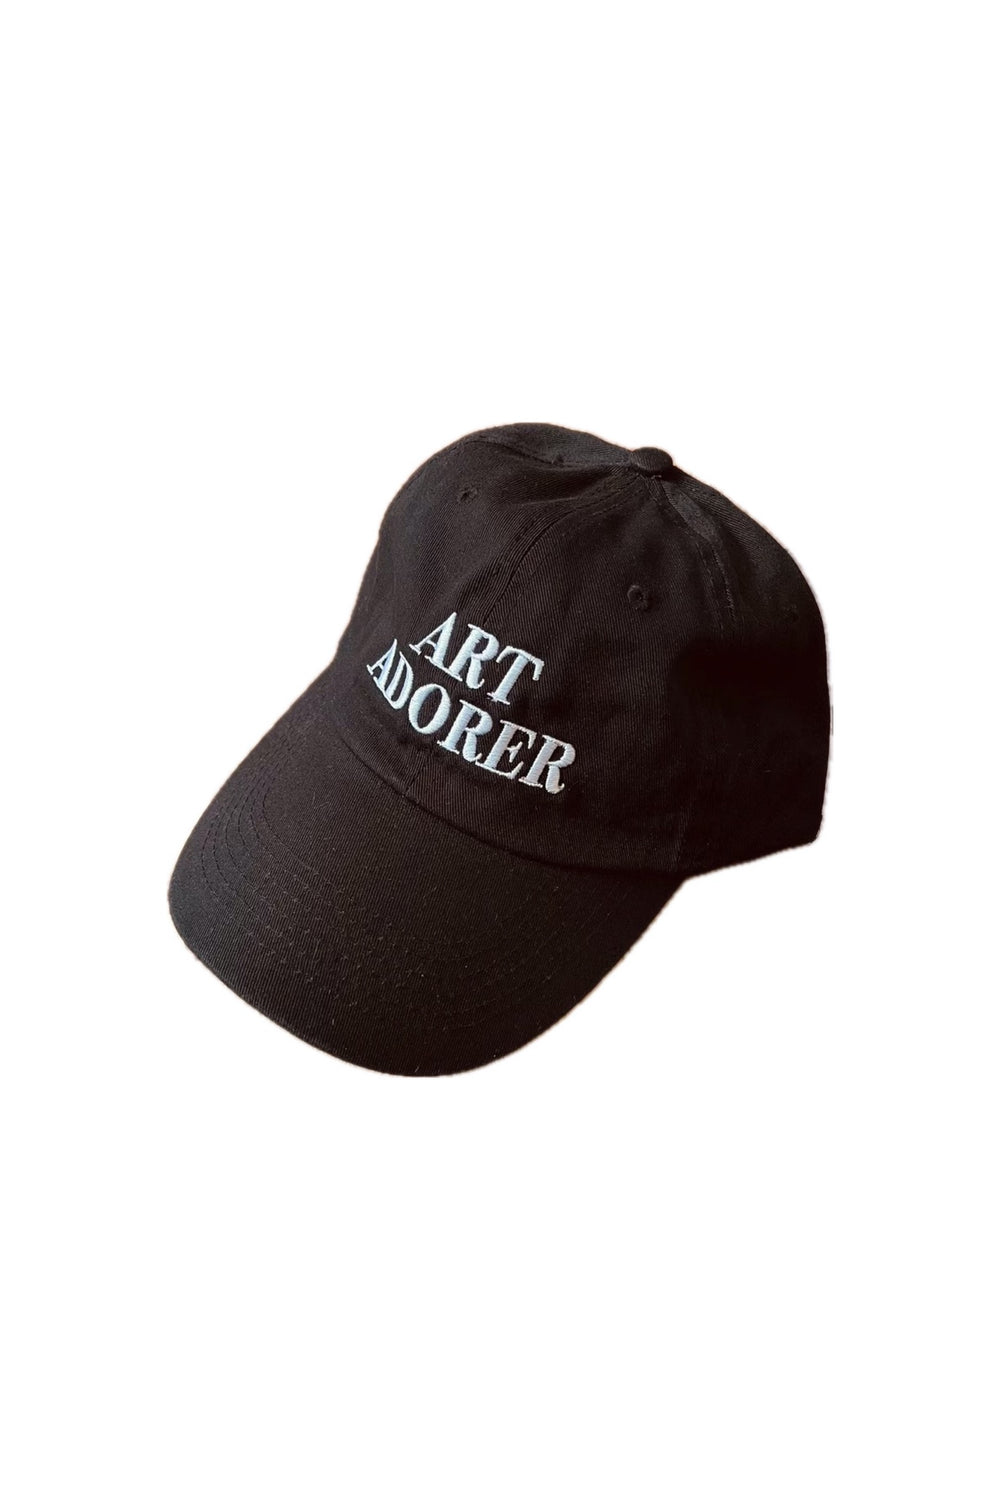 Art Adorer Hat